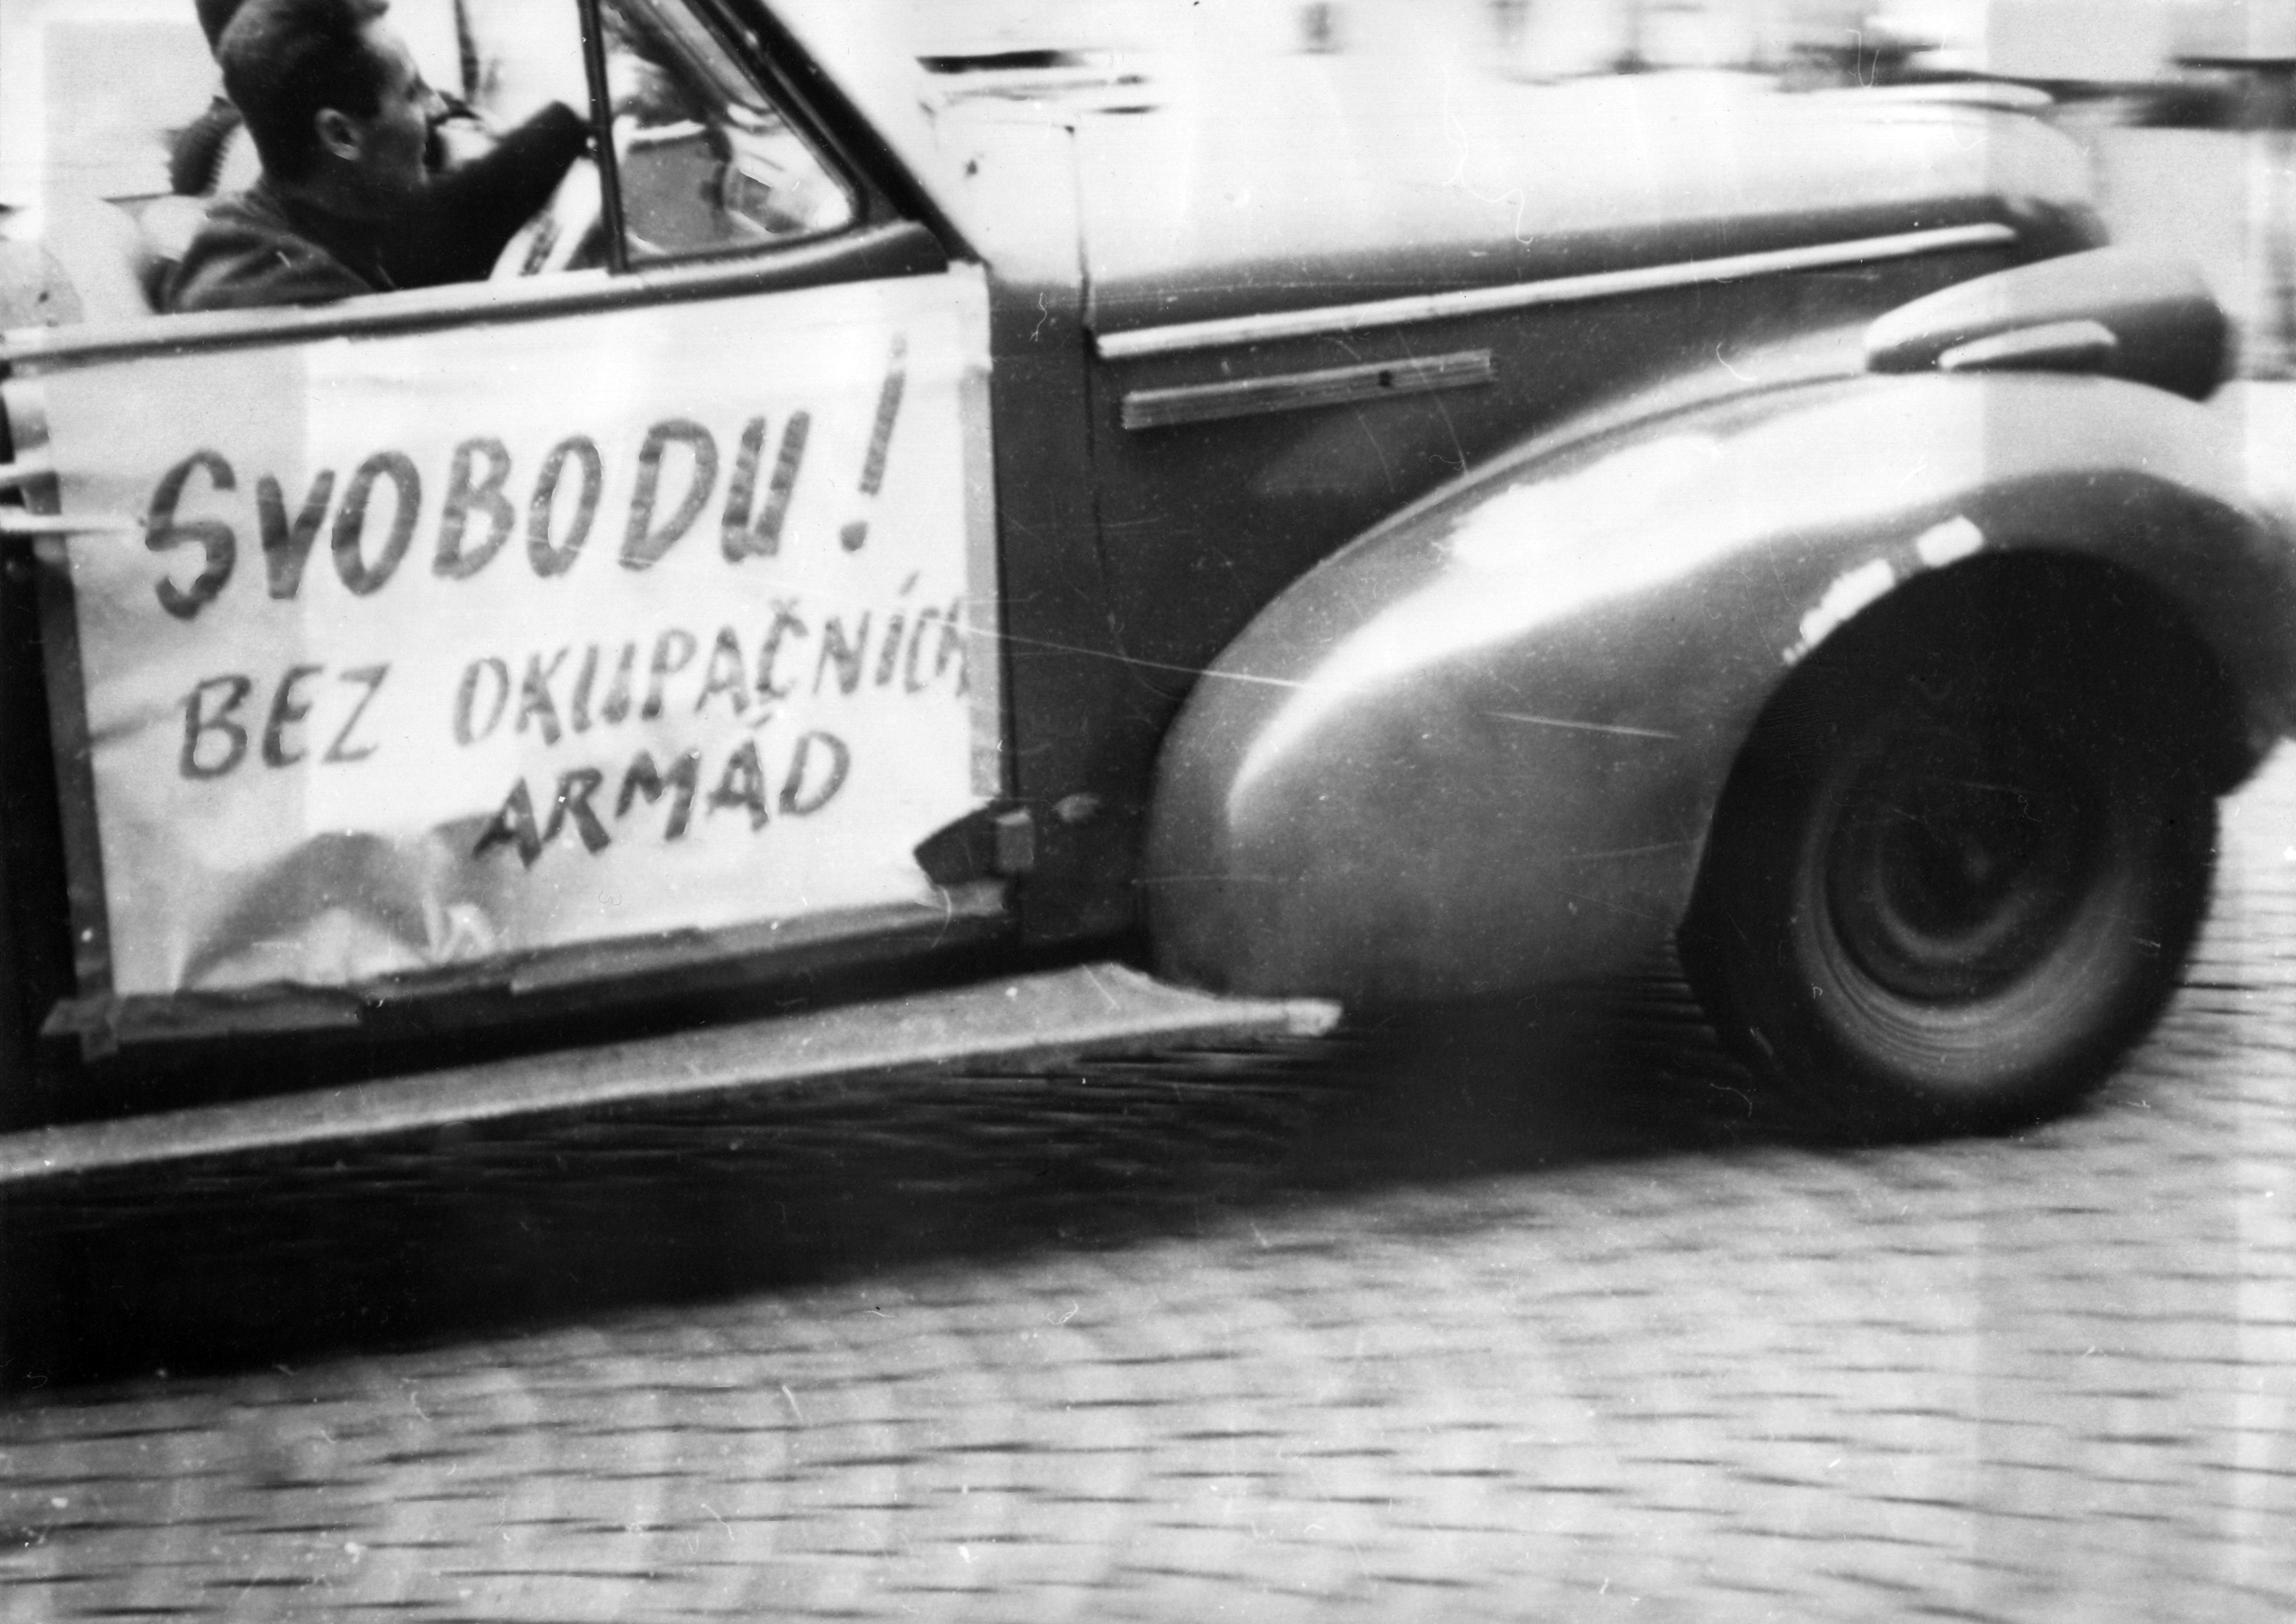 Das Schwarz-Weiß-Foto zeigt den vorderen, seitlichen Teil eines Autos. Im Auto selbst sitzen zwei Personen. An der Beifahrertür ist ein Plakat angebracht, auf dem "Svobodu! bez Okupacních armád" steht.